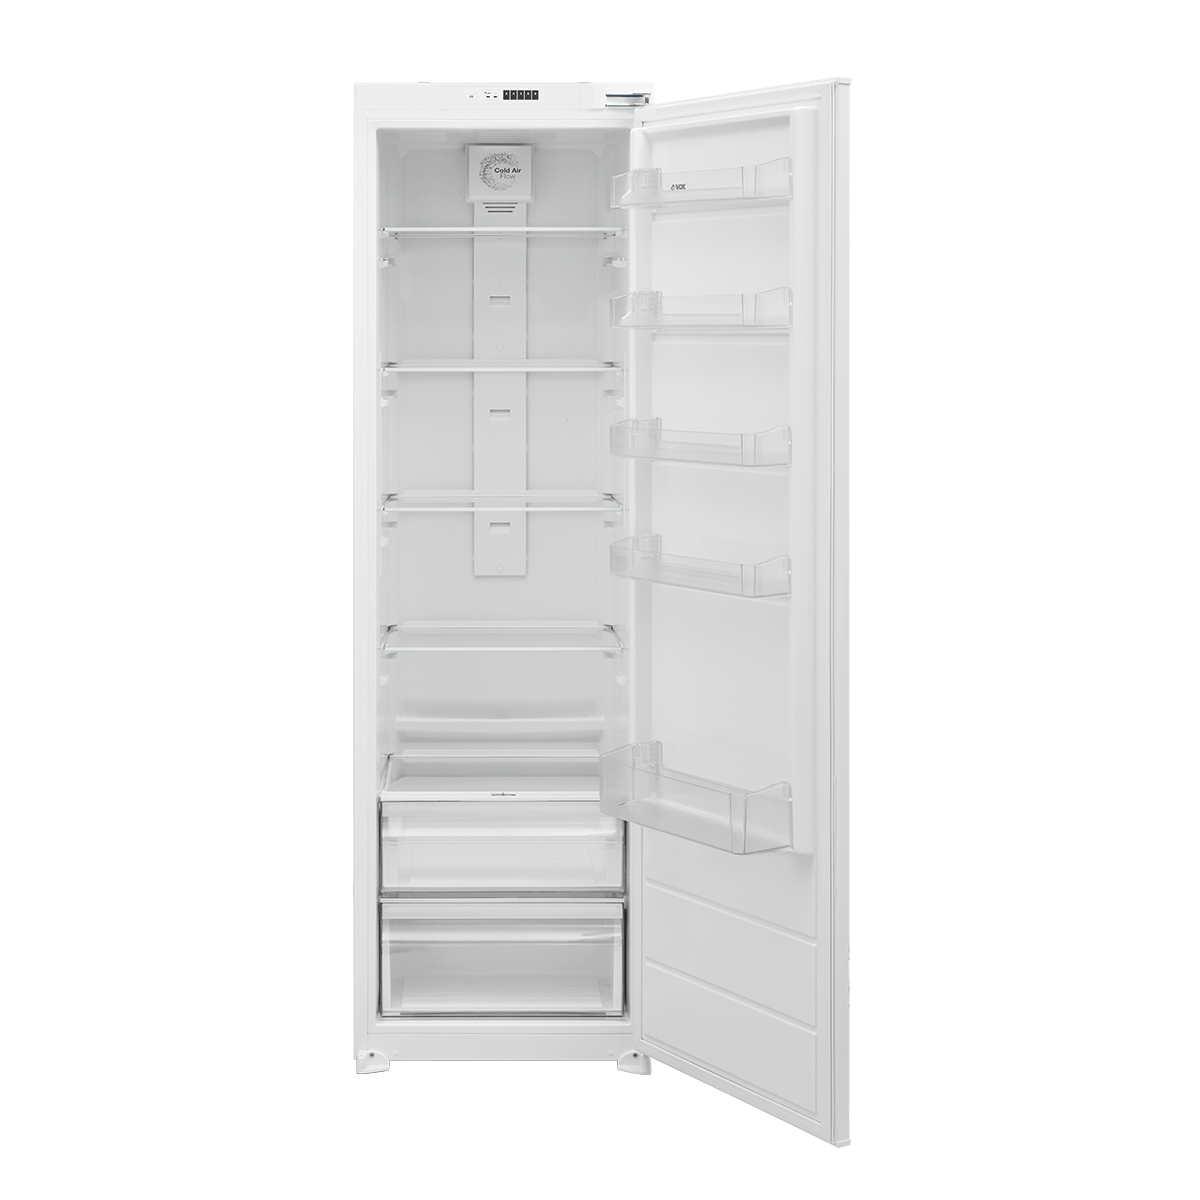 Built-in refrigerator IKS 2790 F 